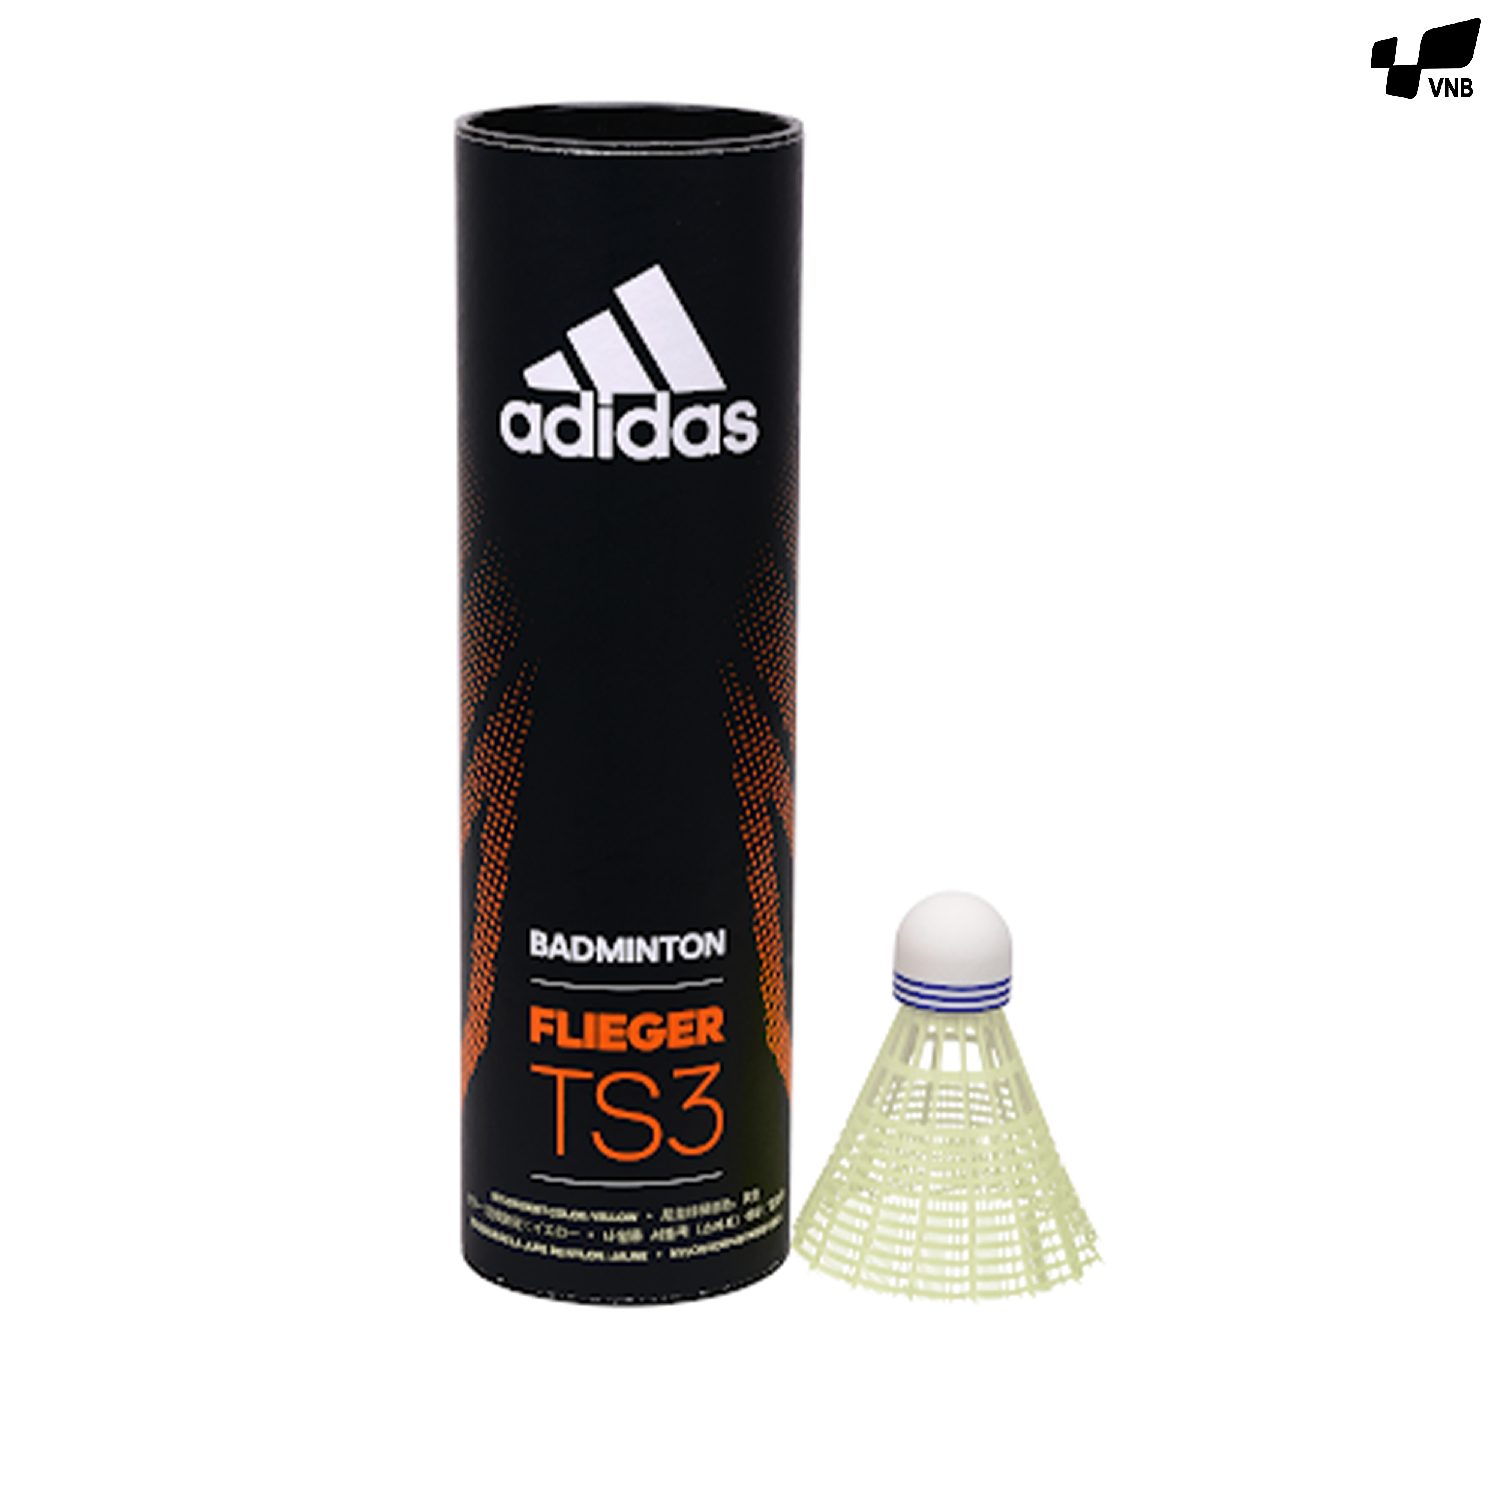 Ống cầu lông nhựa Adidas Flieger TS3 - 6 trái